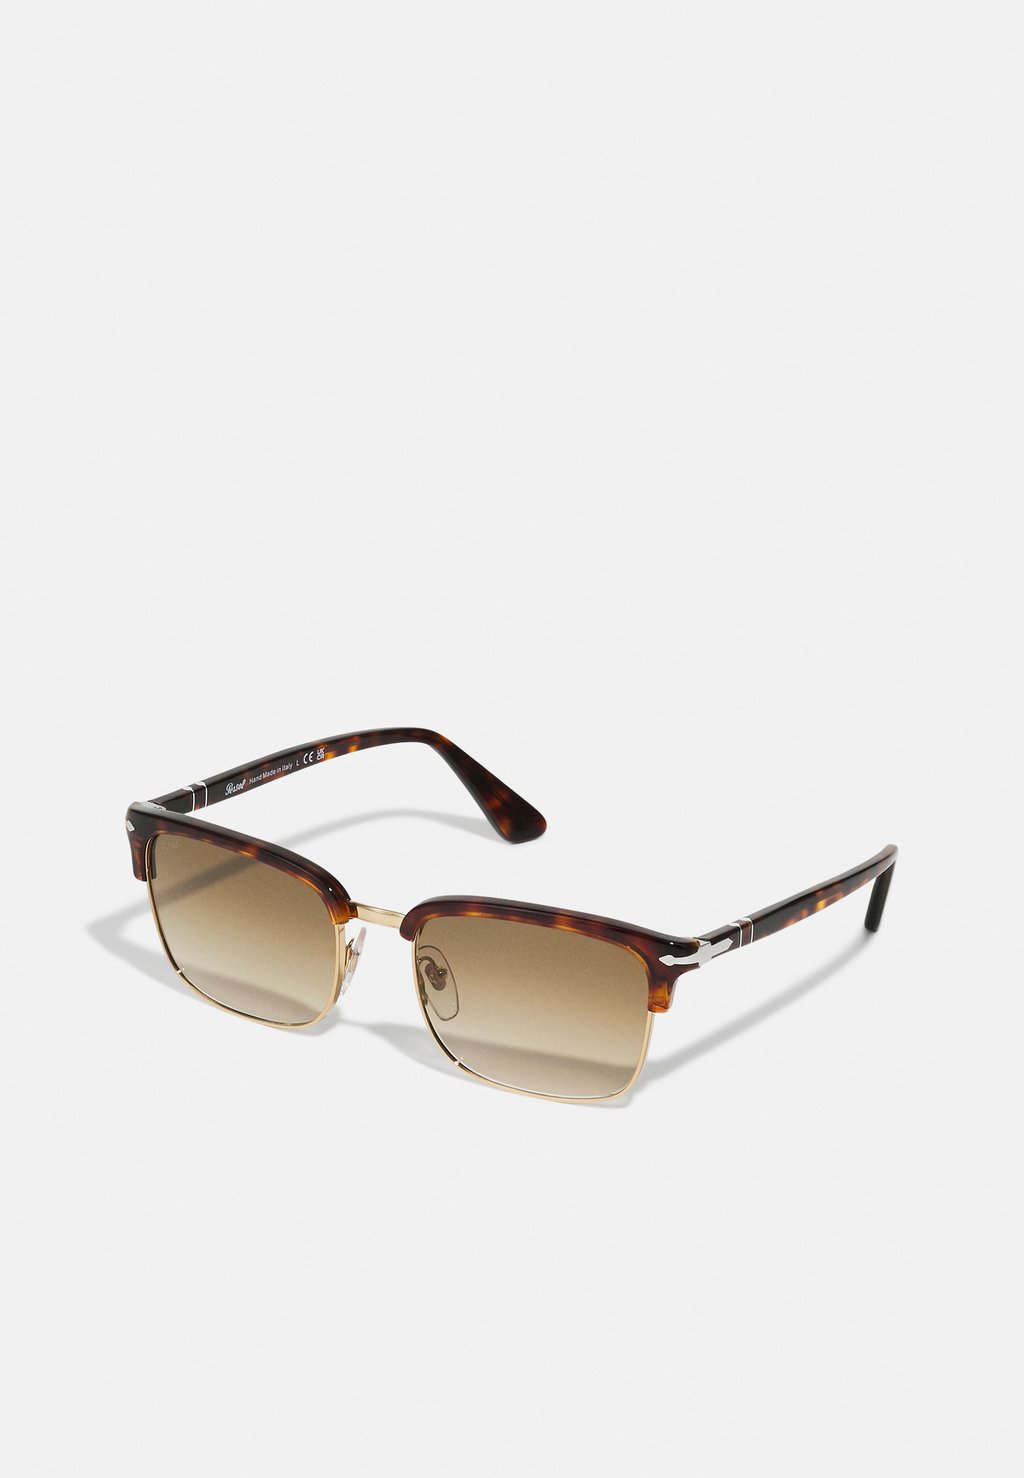 Солнцезащитные очки Unisex Persol, цвет havana